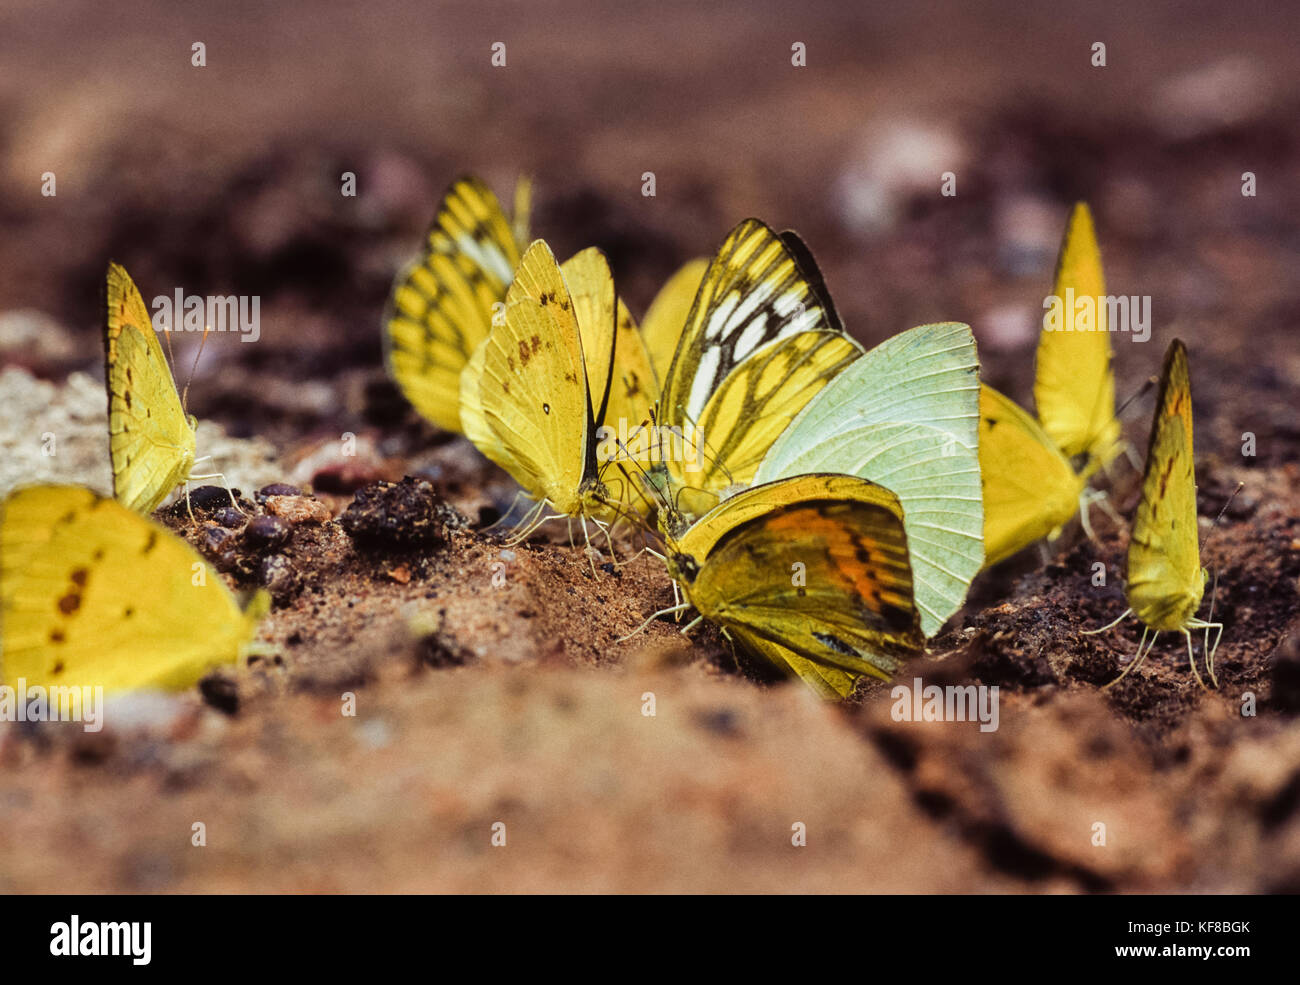 Pioneer, blanc(Belenois aurota) et l'herbe commune, papillons jaune(Eurema hécube hécube), de flaques de boue,Parc national de Keoladeo Ghana, Inde Banque D'Images